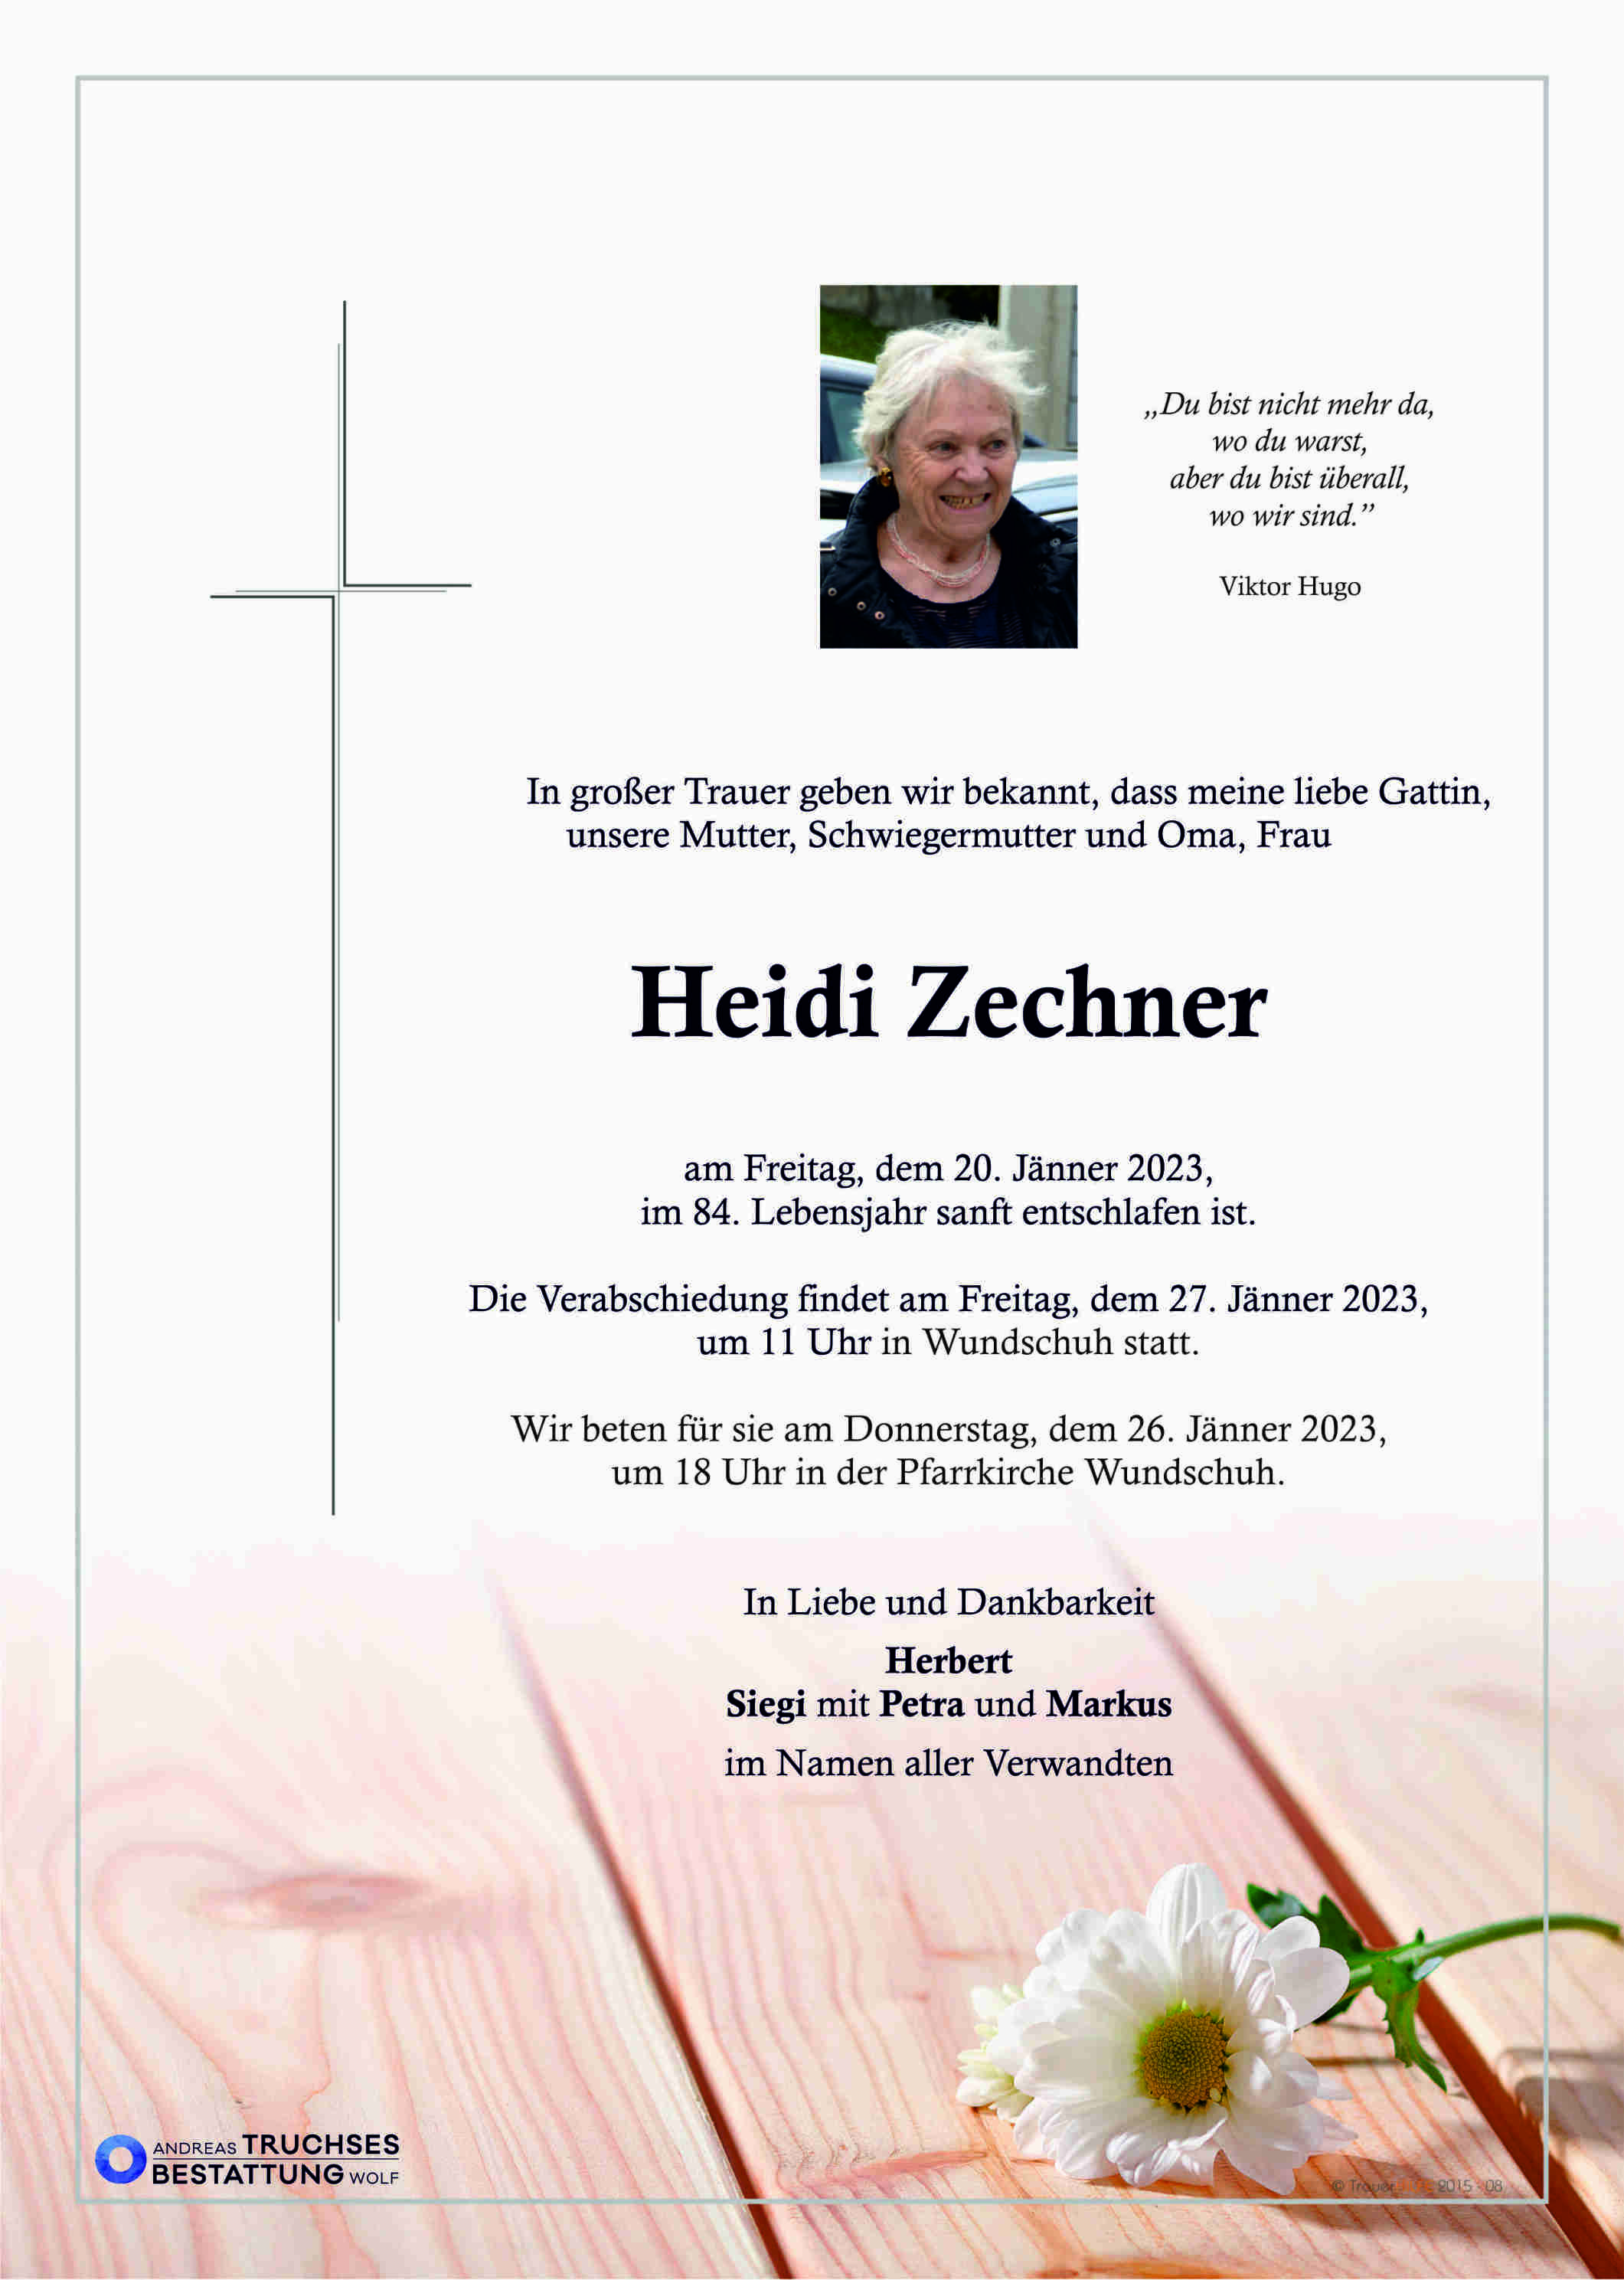 Heidi Zechner